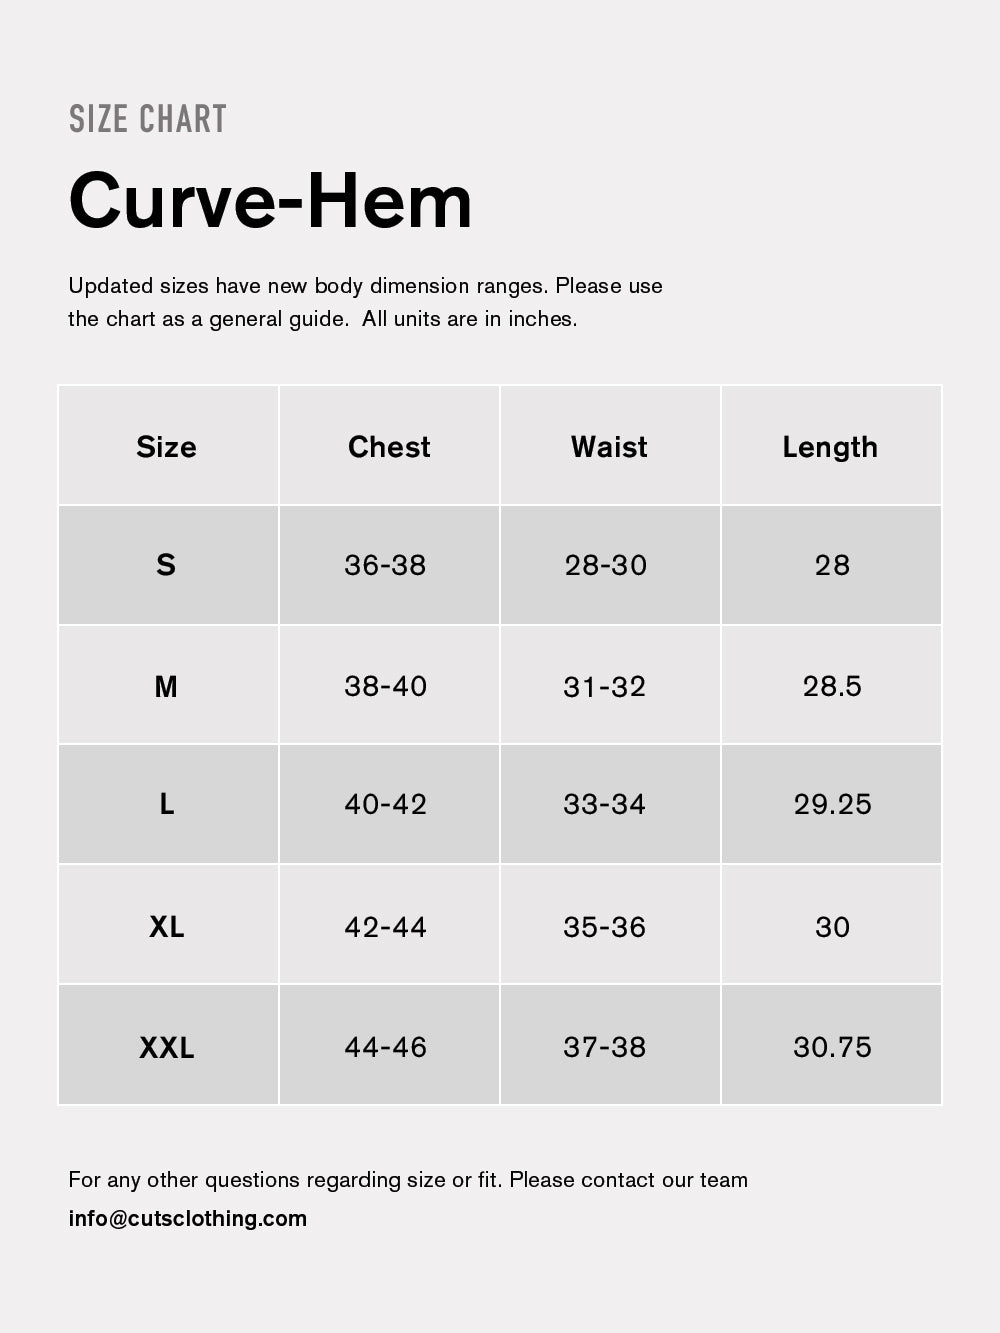 Men's Lingerie Size Guide  Find Lingerie Styles & Sizes for Men